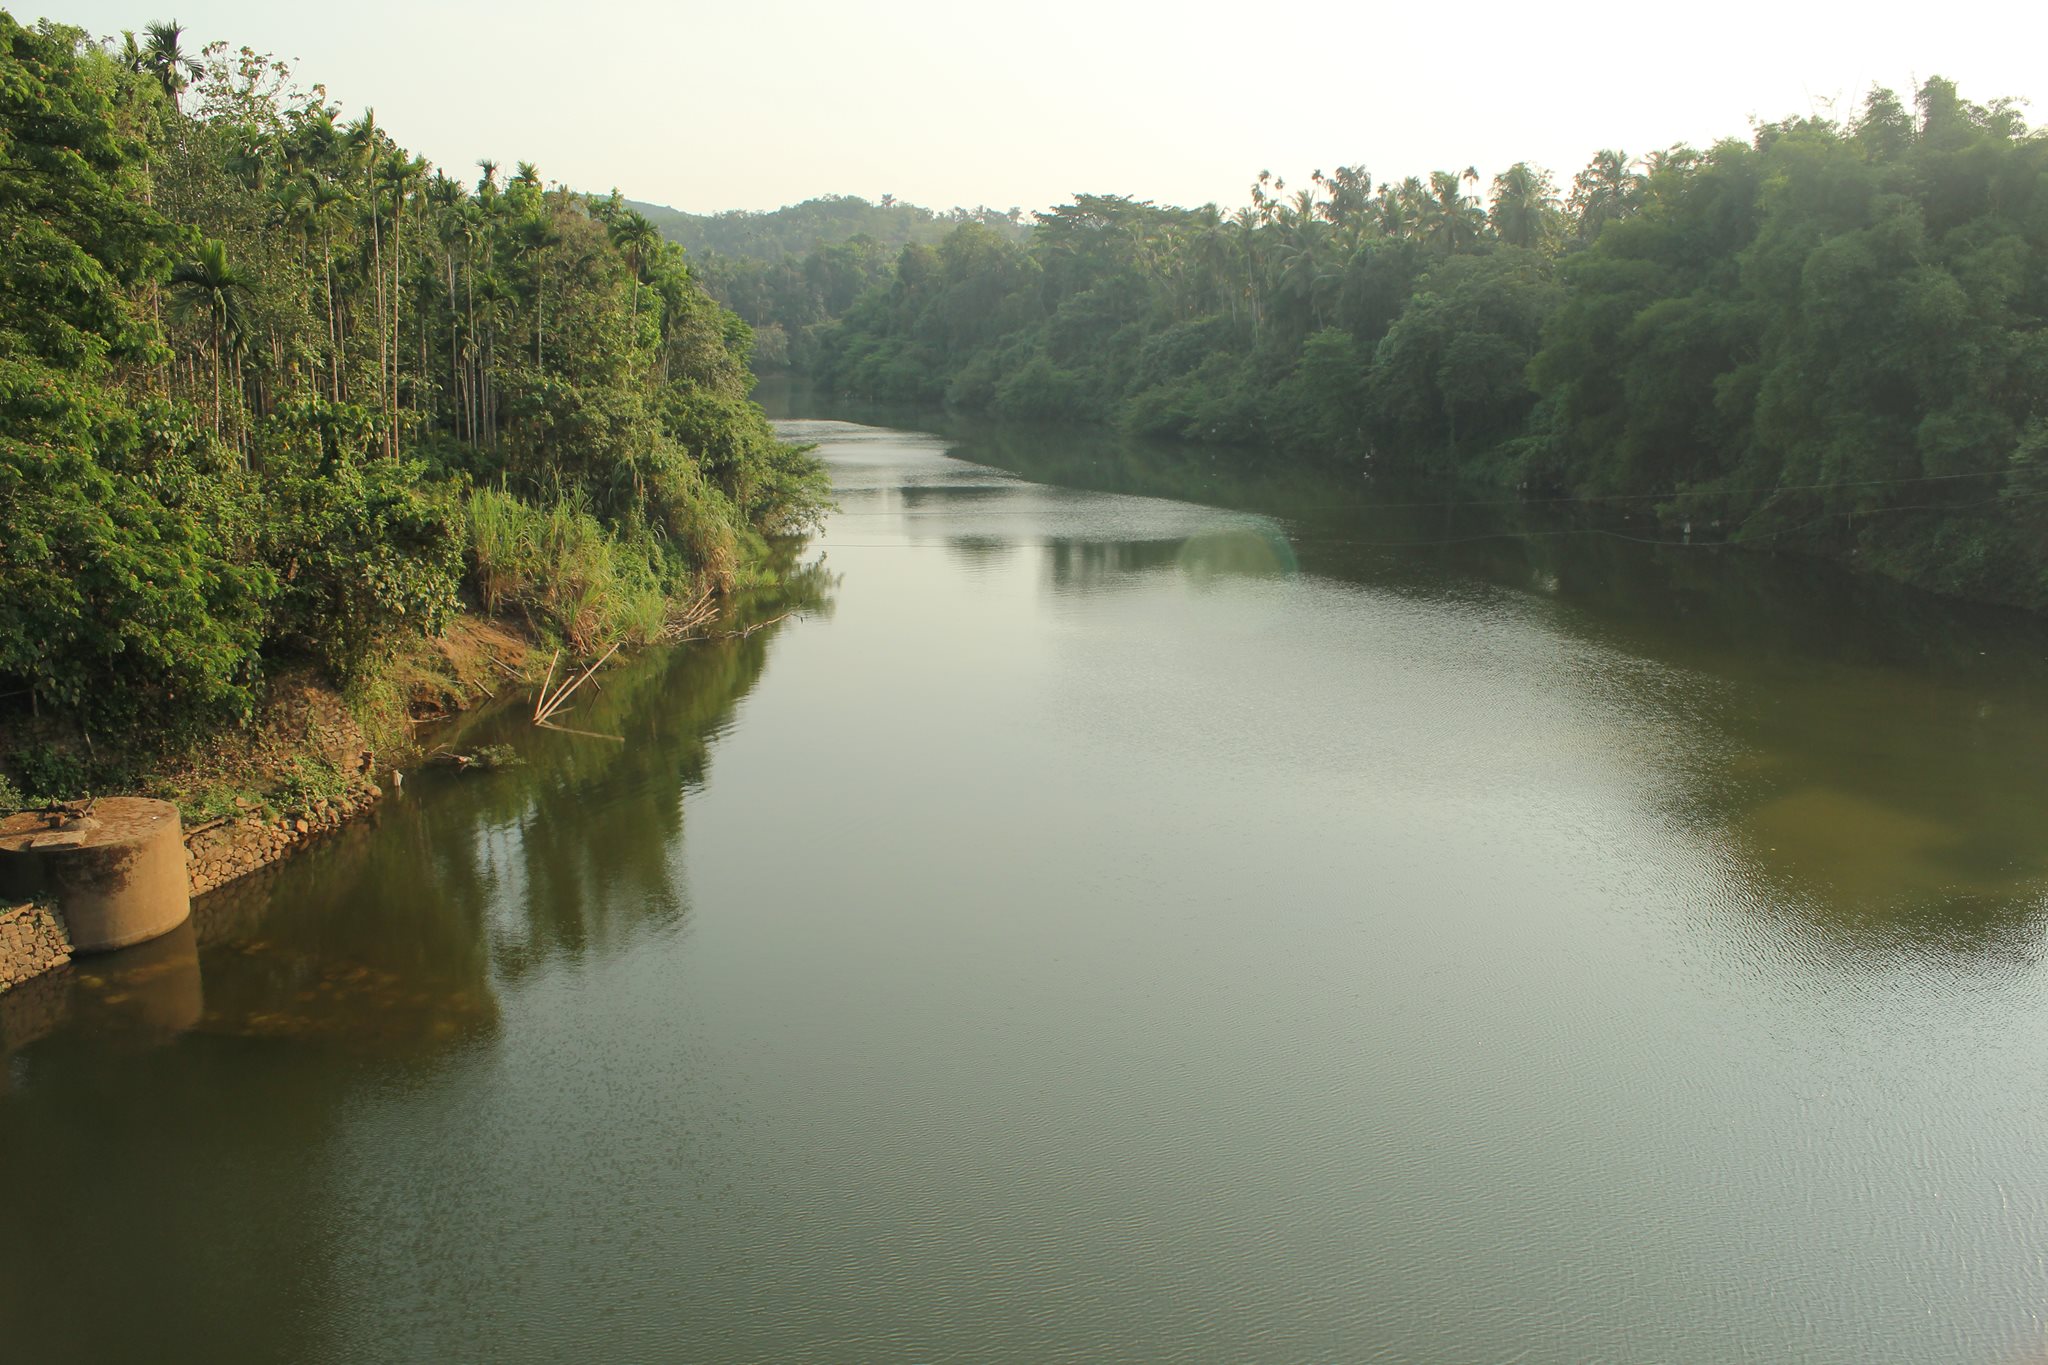 Iruvazhanji river